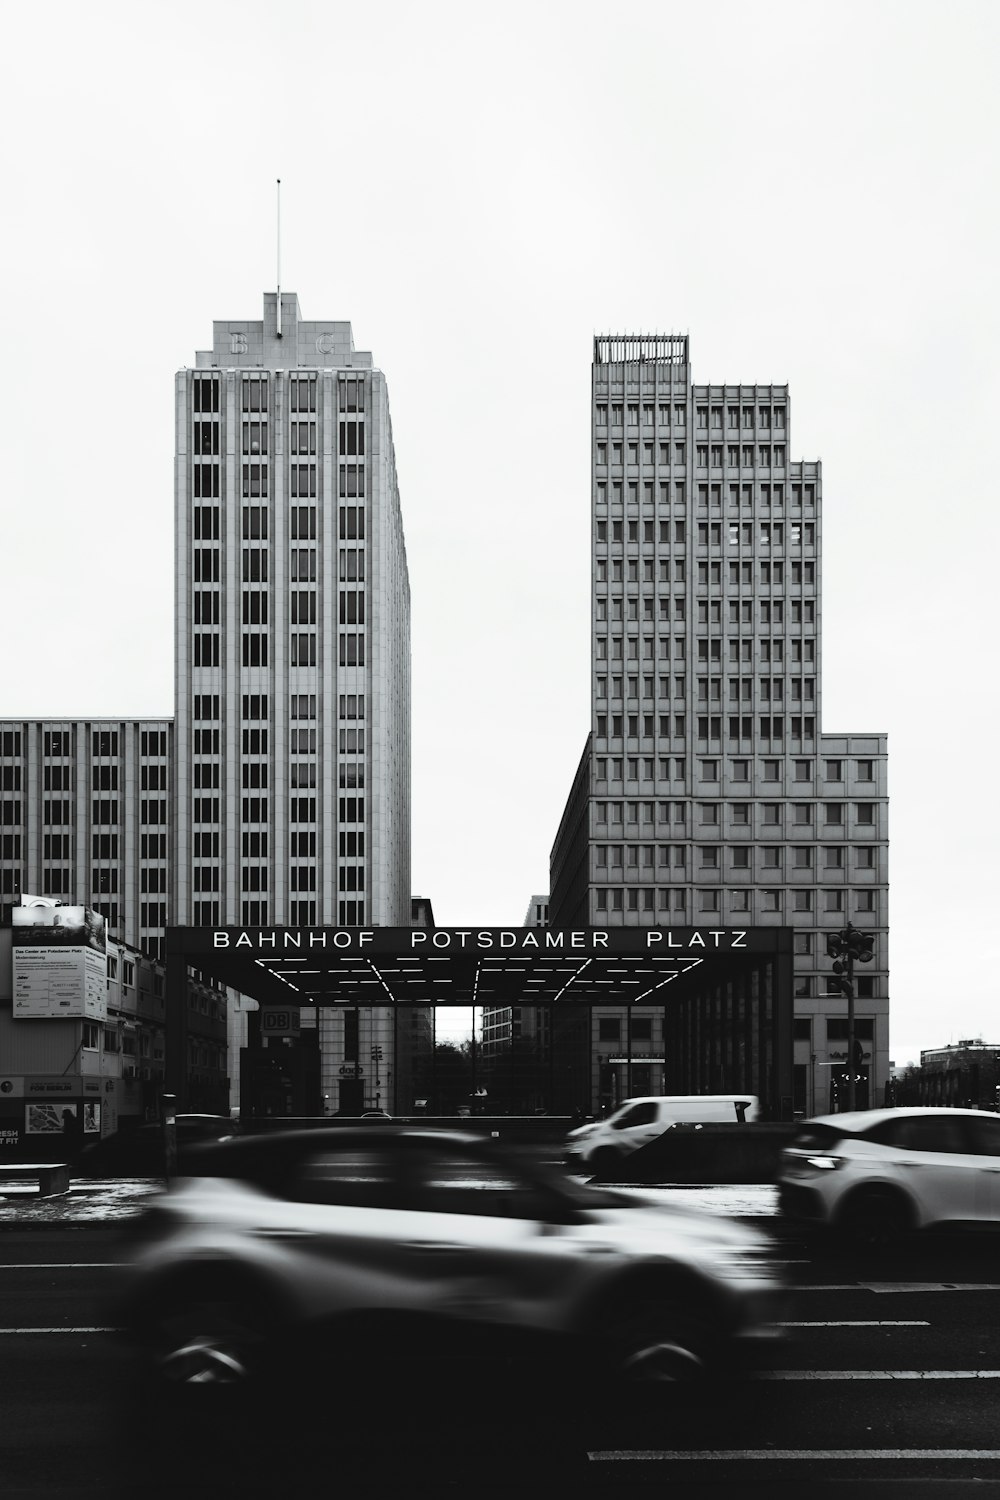 Una foto en blanco y negro de una ciudad con edificios altos